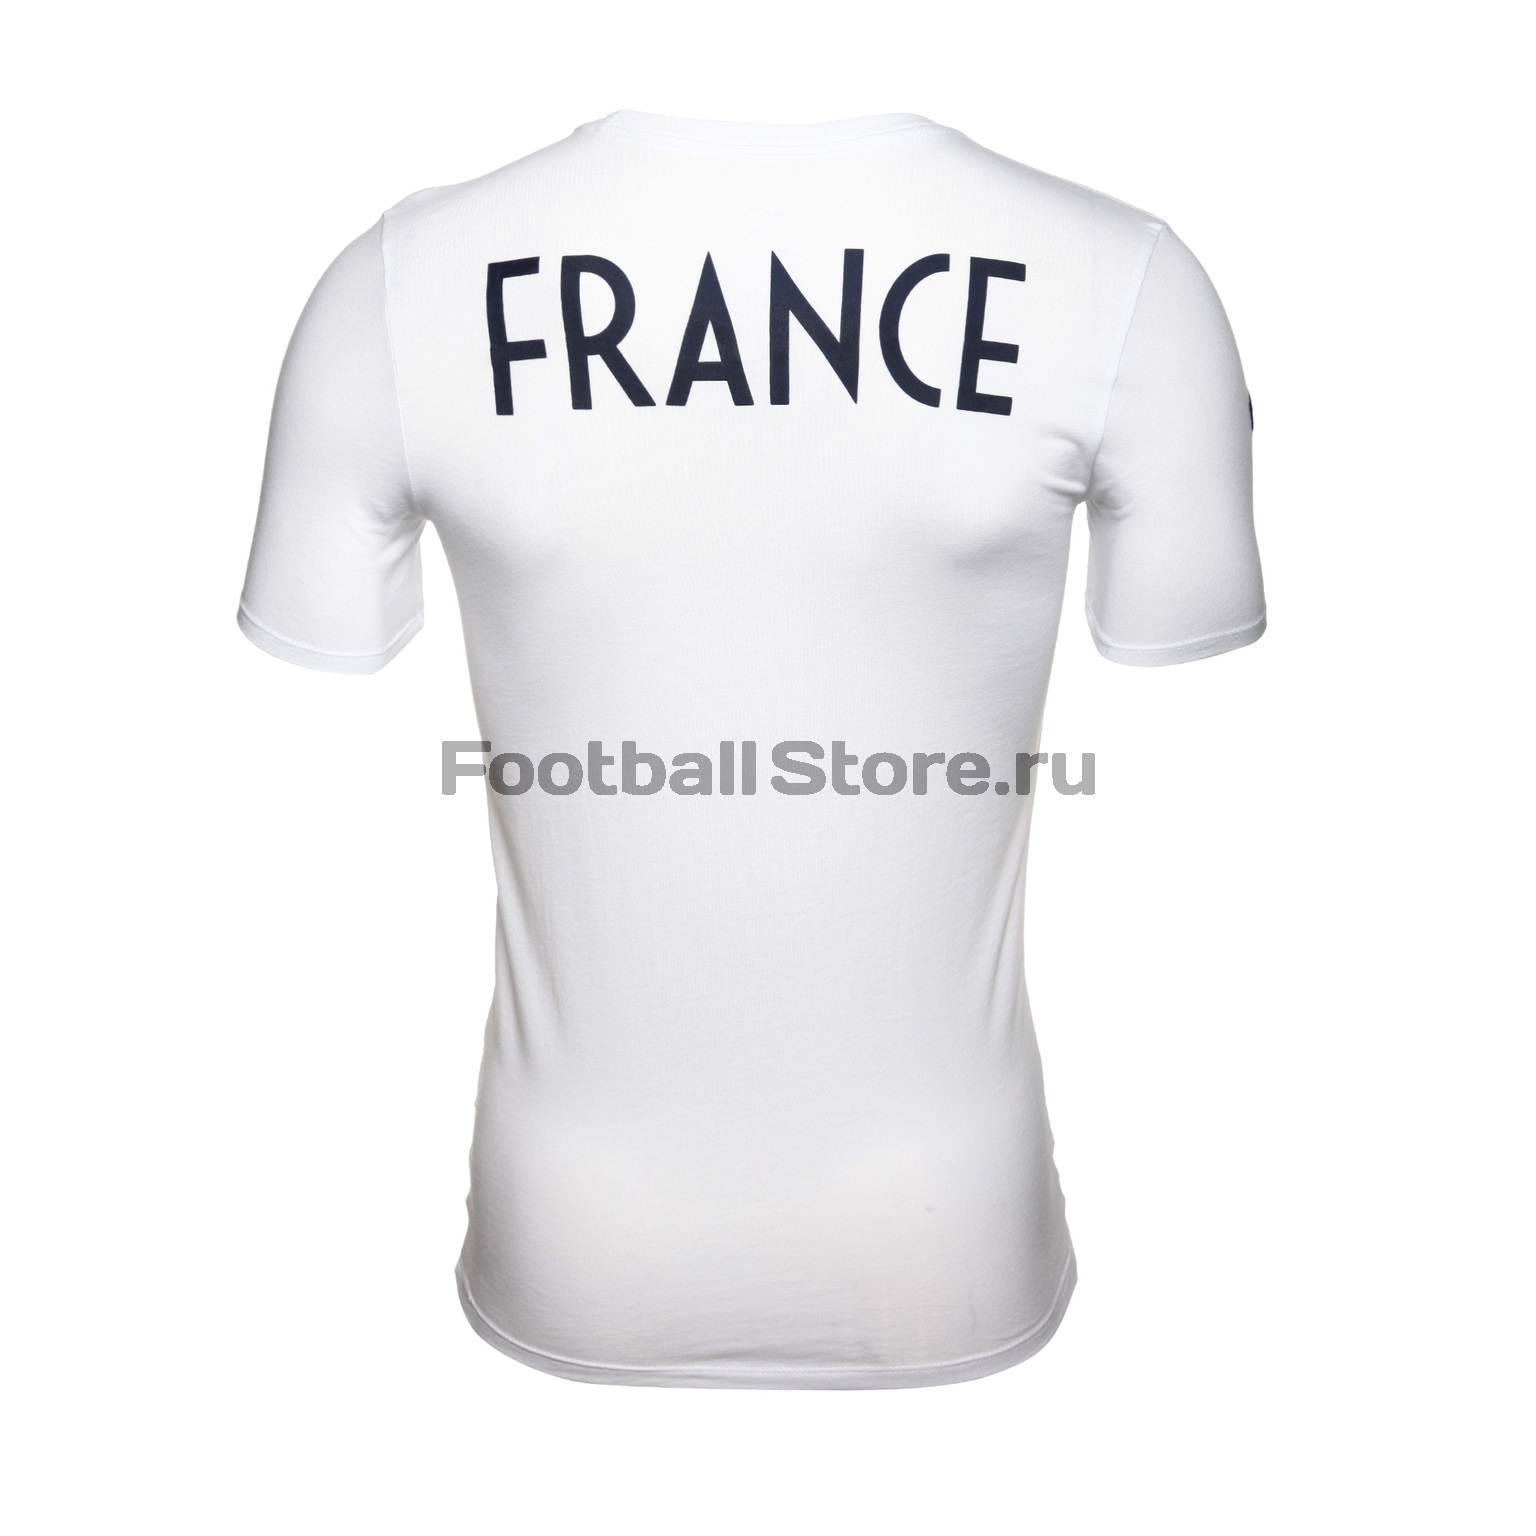 Футболка Nike сборной Франции 888834-100 